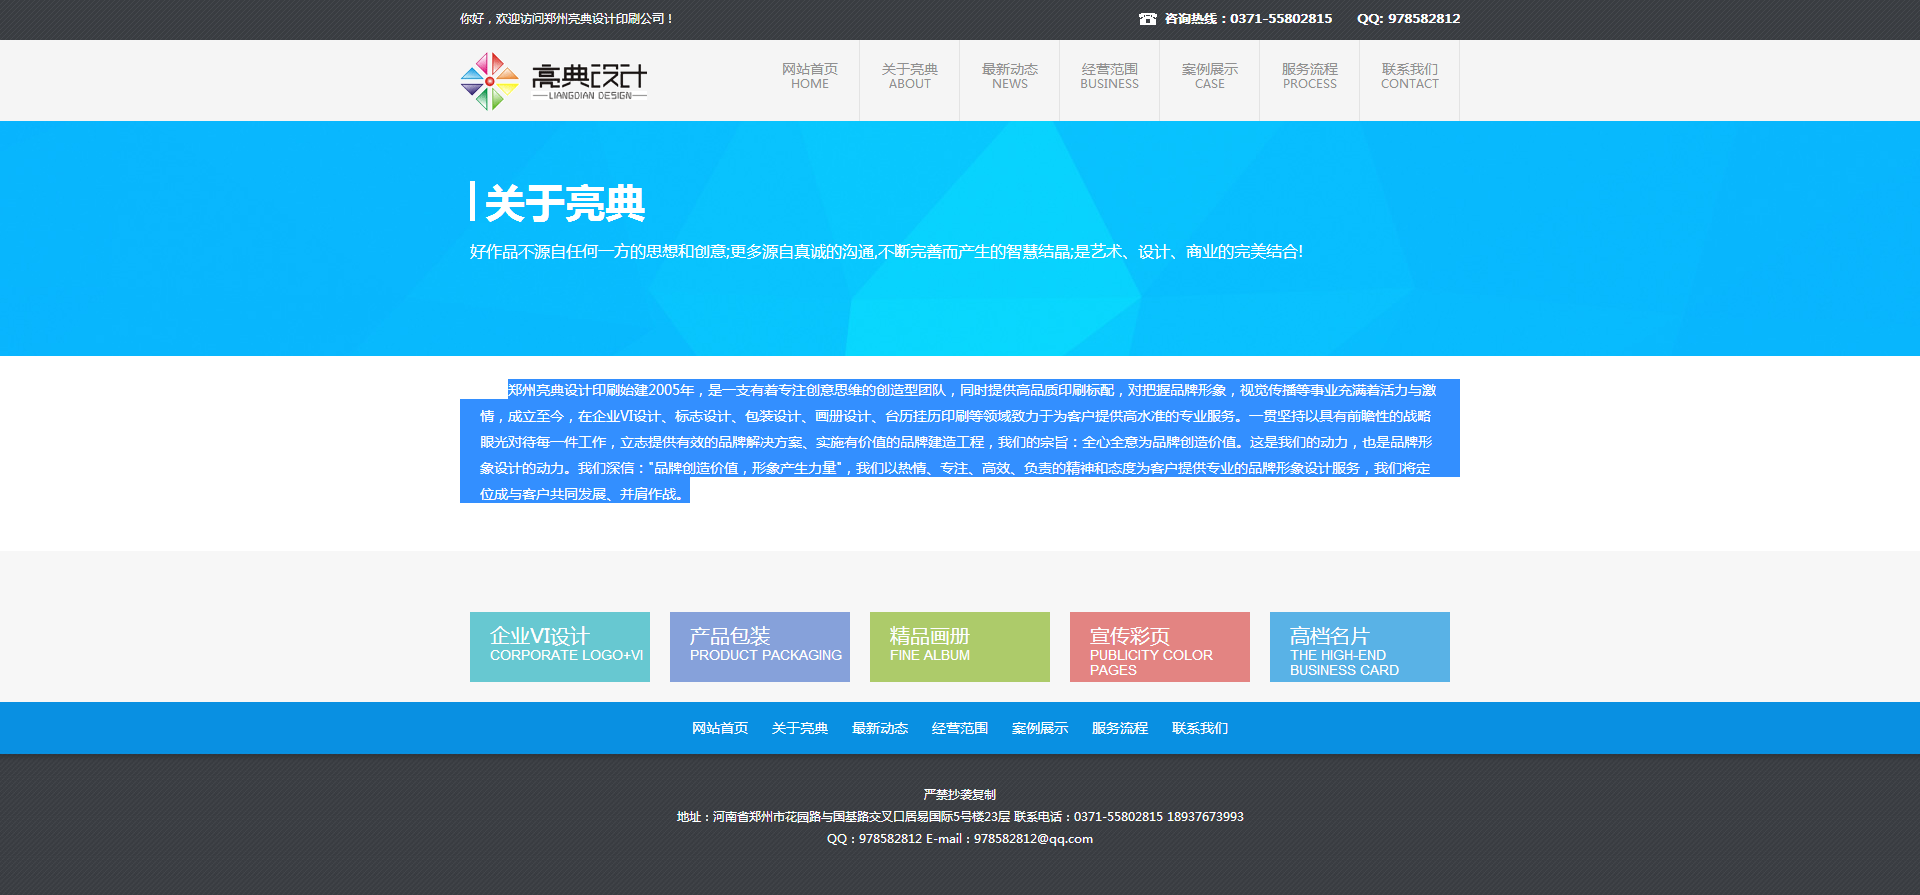 郑州亮典设计印刷网站建设效果图效果图